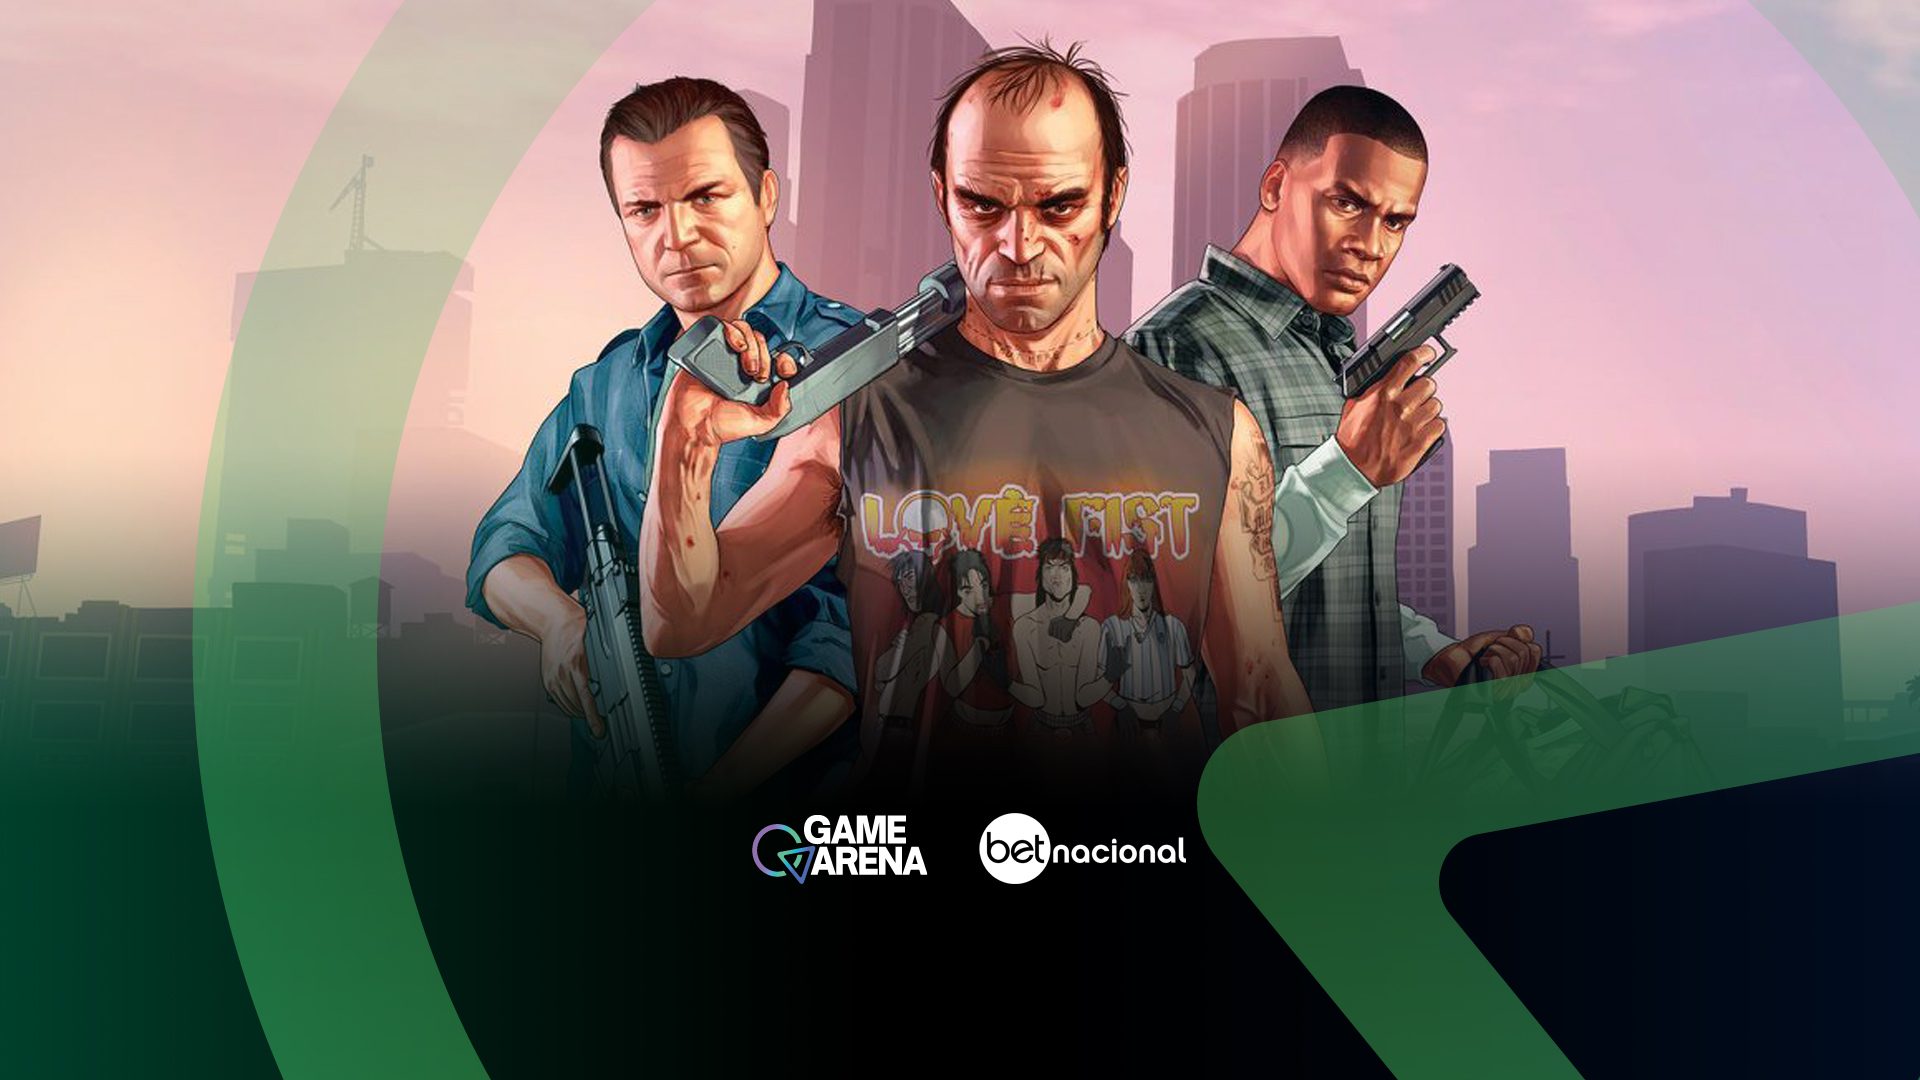 Grand Theft Auto: 5 Maiores Controvérsias Da Franquia De Sucesso!